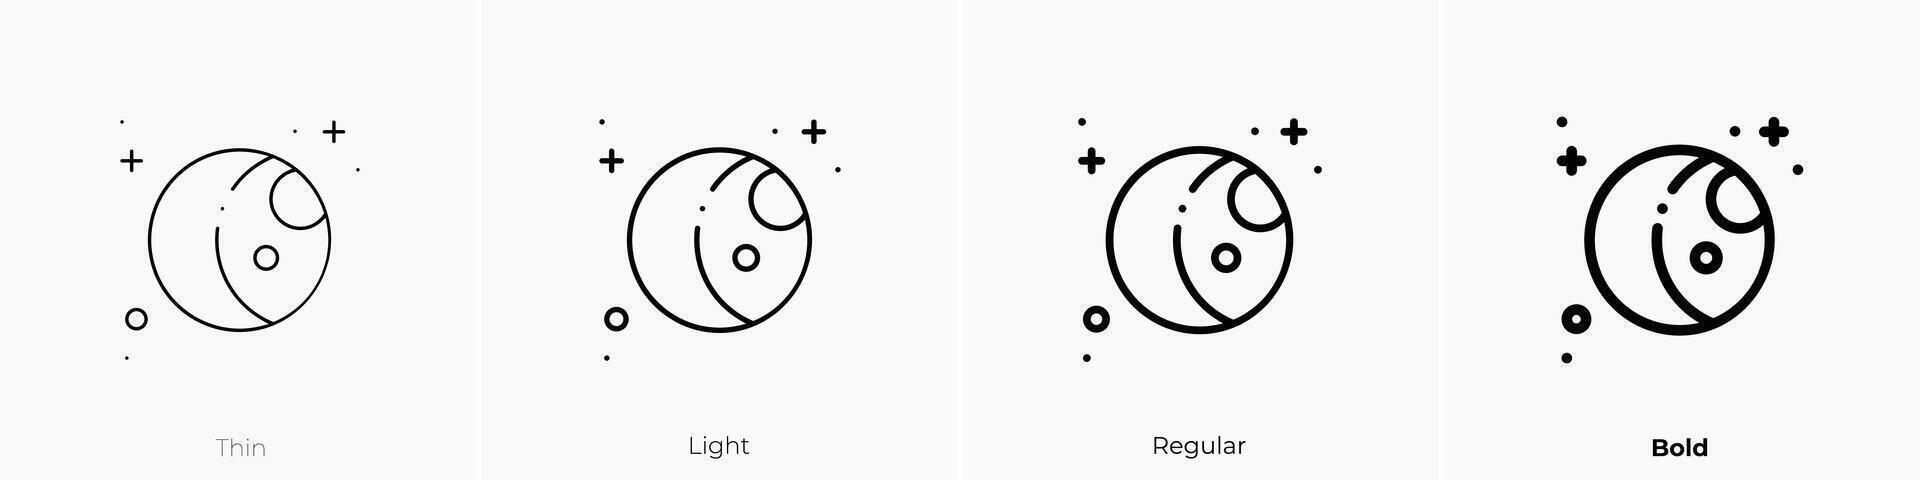 Mond Symbol. dünn, Licht, regulär und Fett gedruckt Stil Design isoliert auf Weiß Hintergrund vektor